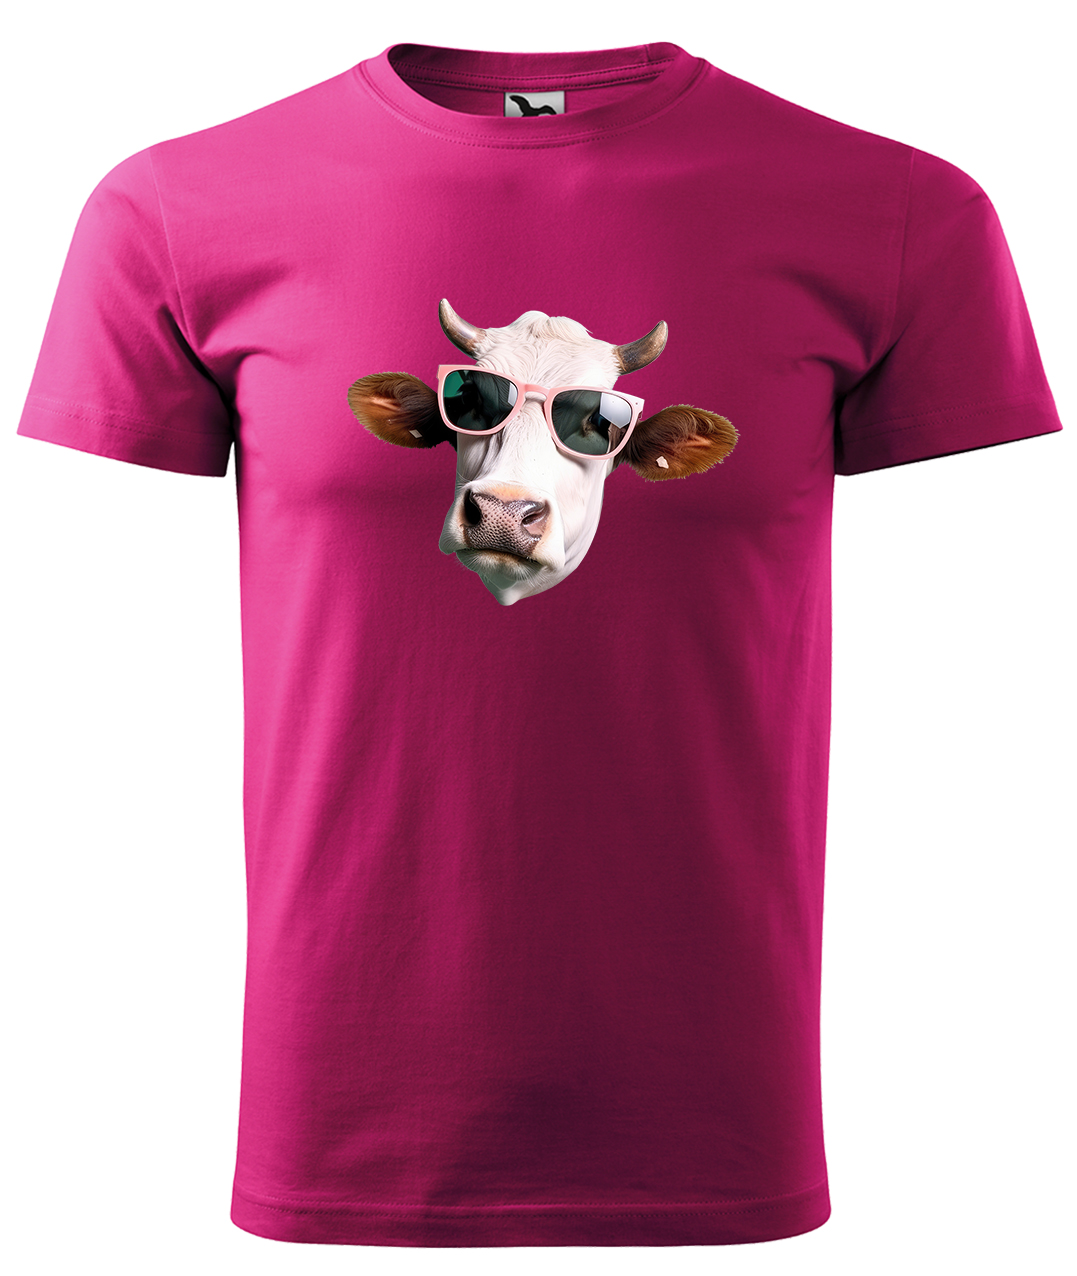 Dětské tričko s krávou - Kráva v brýlích Velikost: 10 let / 146 cm, Barva: Malinová (63), Délka rukávu: Krátký rukáv